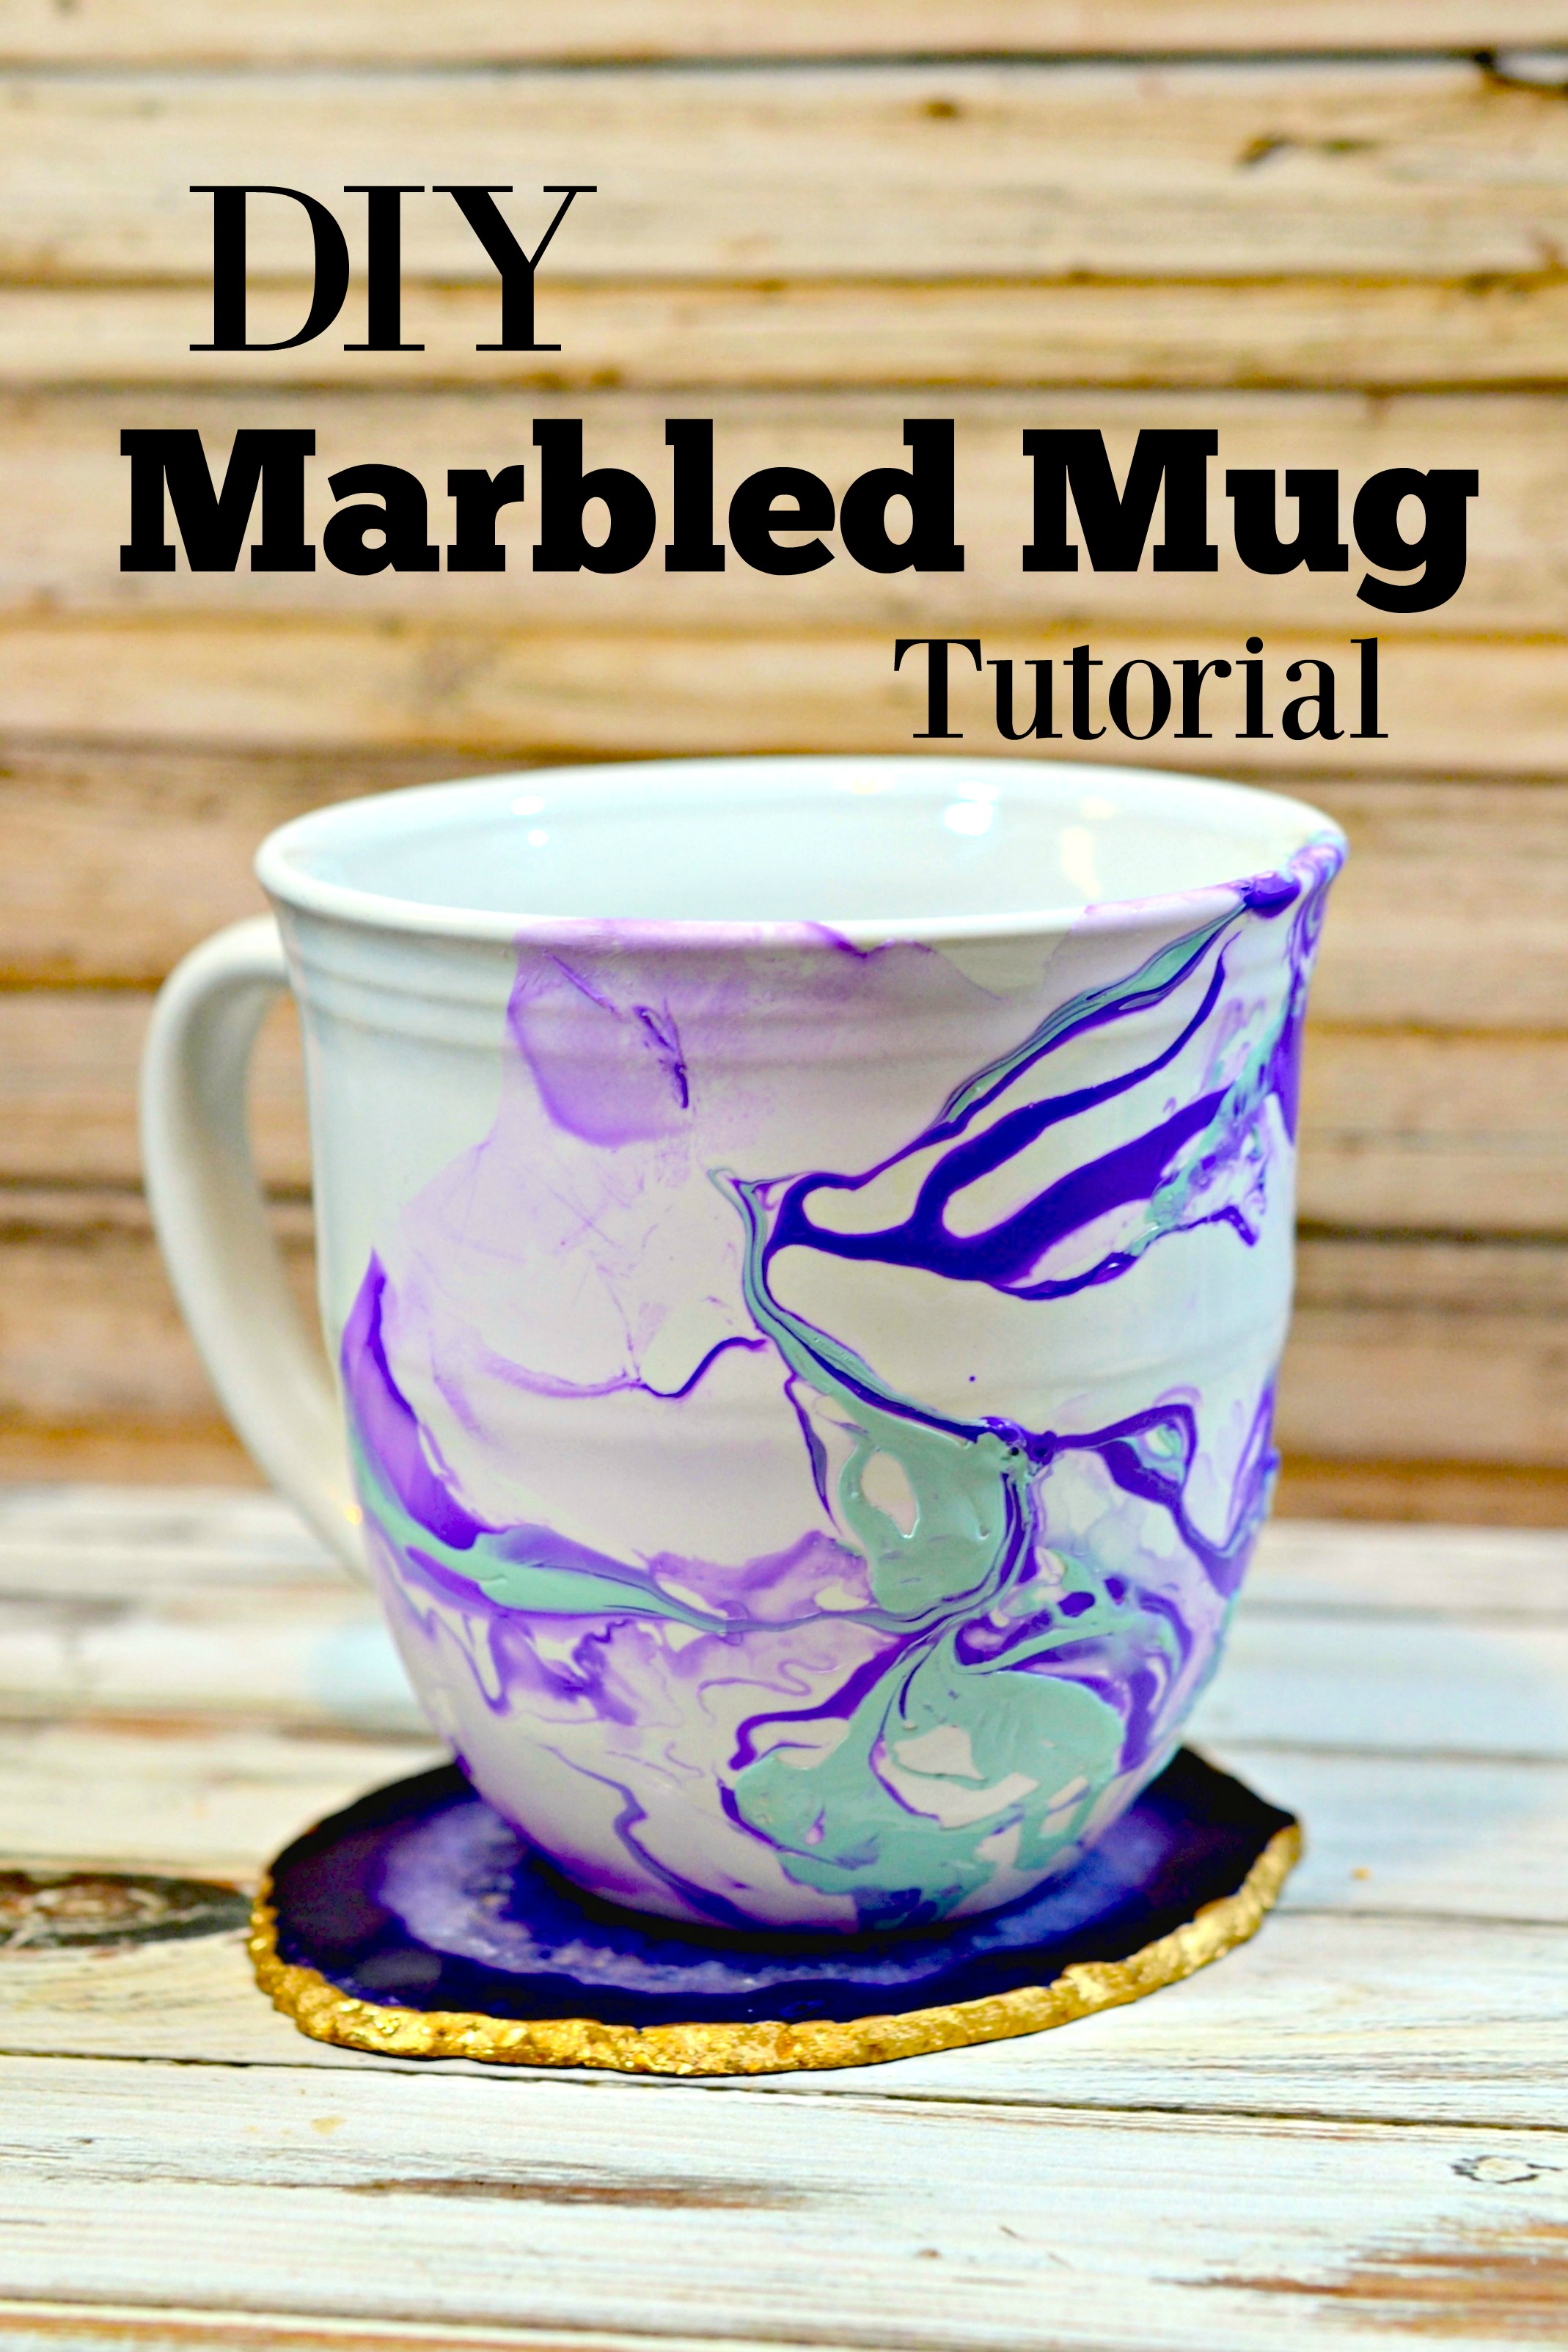 DIY Marbled Mugs using Nail Polish| with dollar store mugs and bowls. -  YouTube